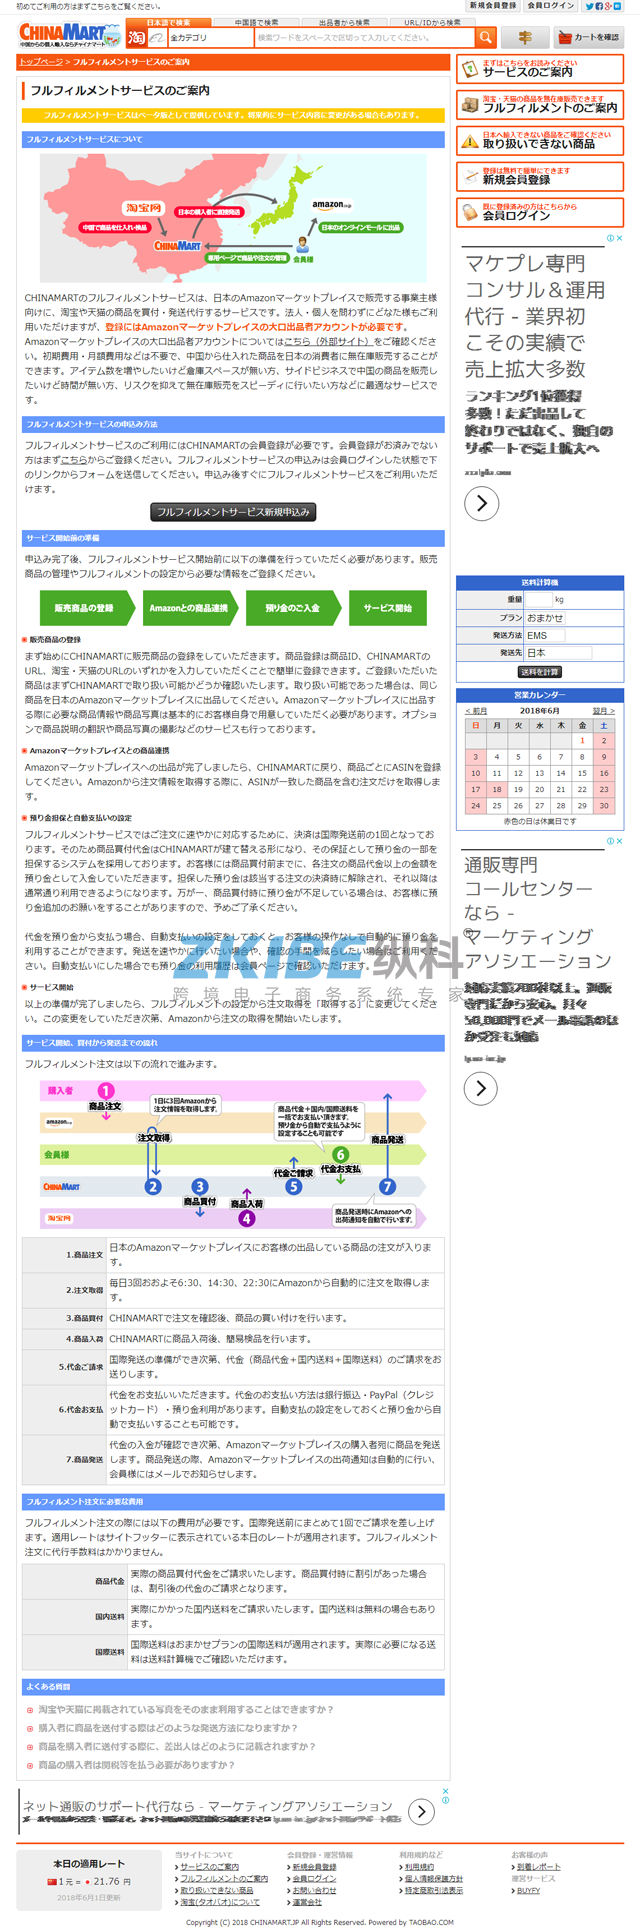 日文淘宝代购系统-履行信息页面